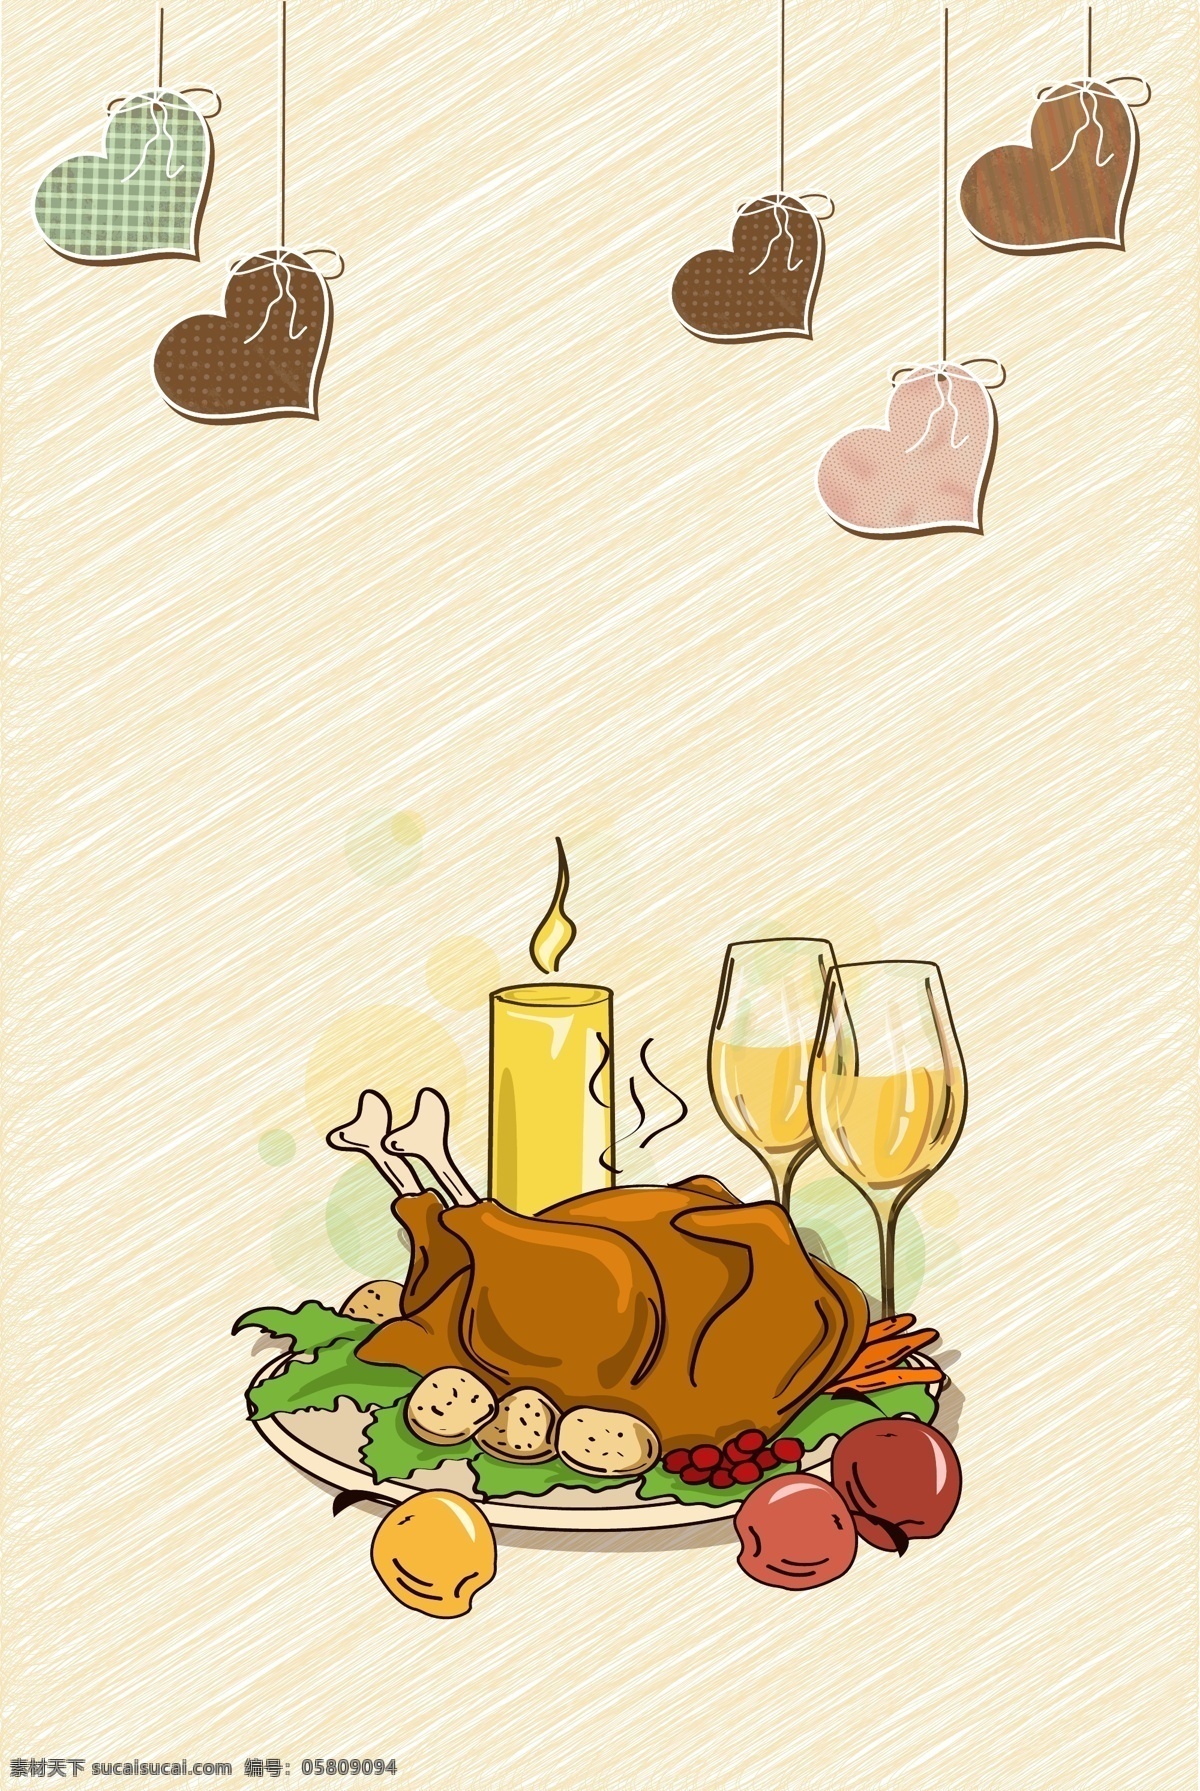 矢量 卡通 手绘 感恩节 促销 海报 火鸡 烤鸡 欧美 烧鸡 晚宴 西方 宗教节日